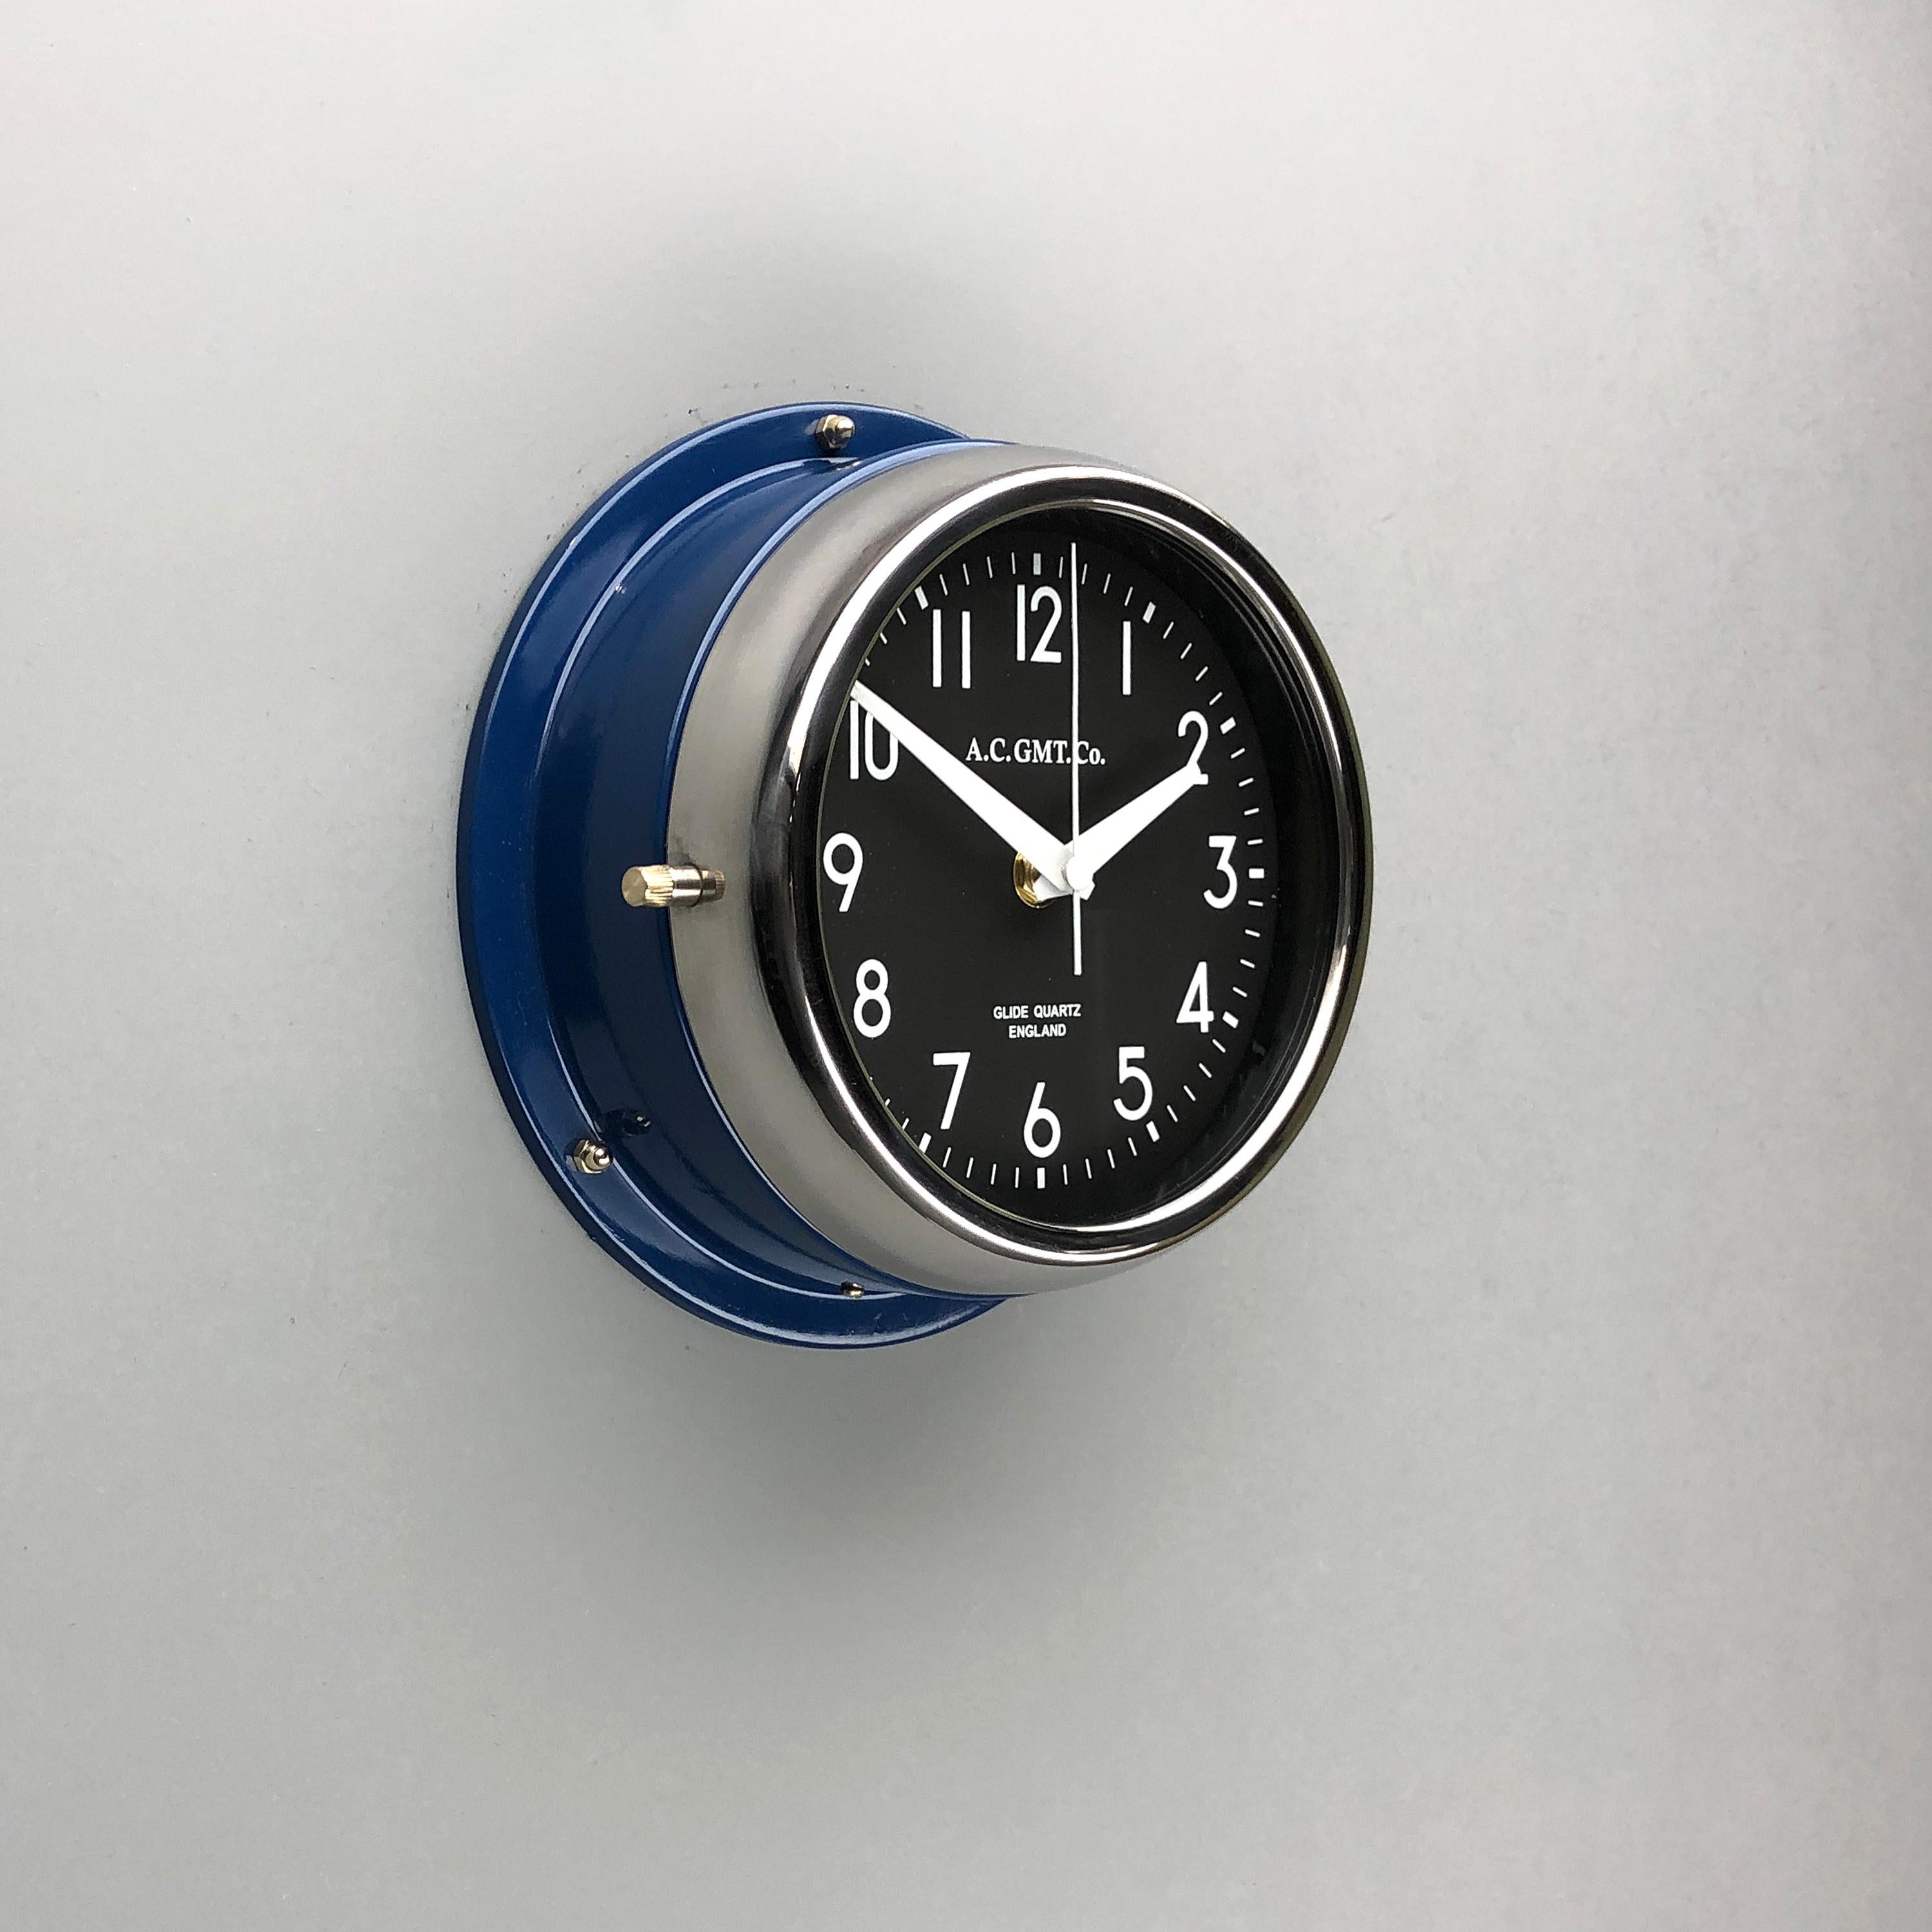 Acier 1970s British Classic Blue & Chrome AC.GMT.Co. Horloge murale industrielle cadran noir en vente